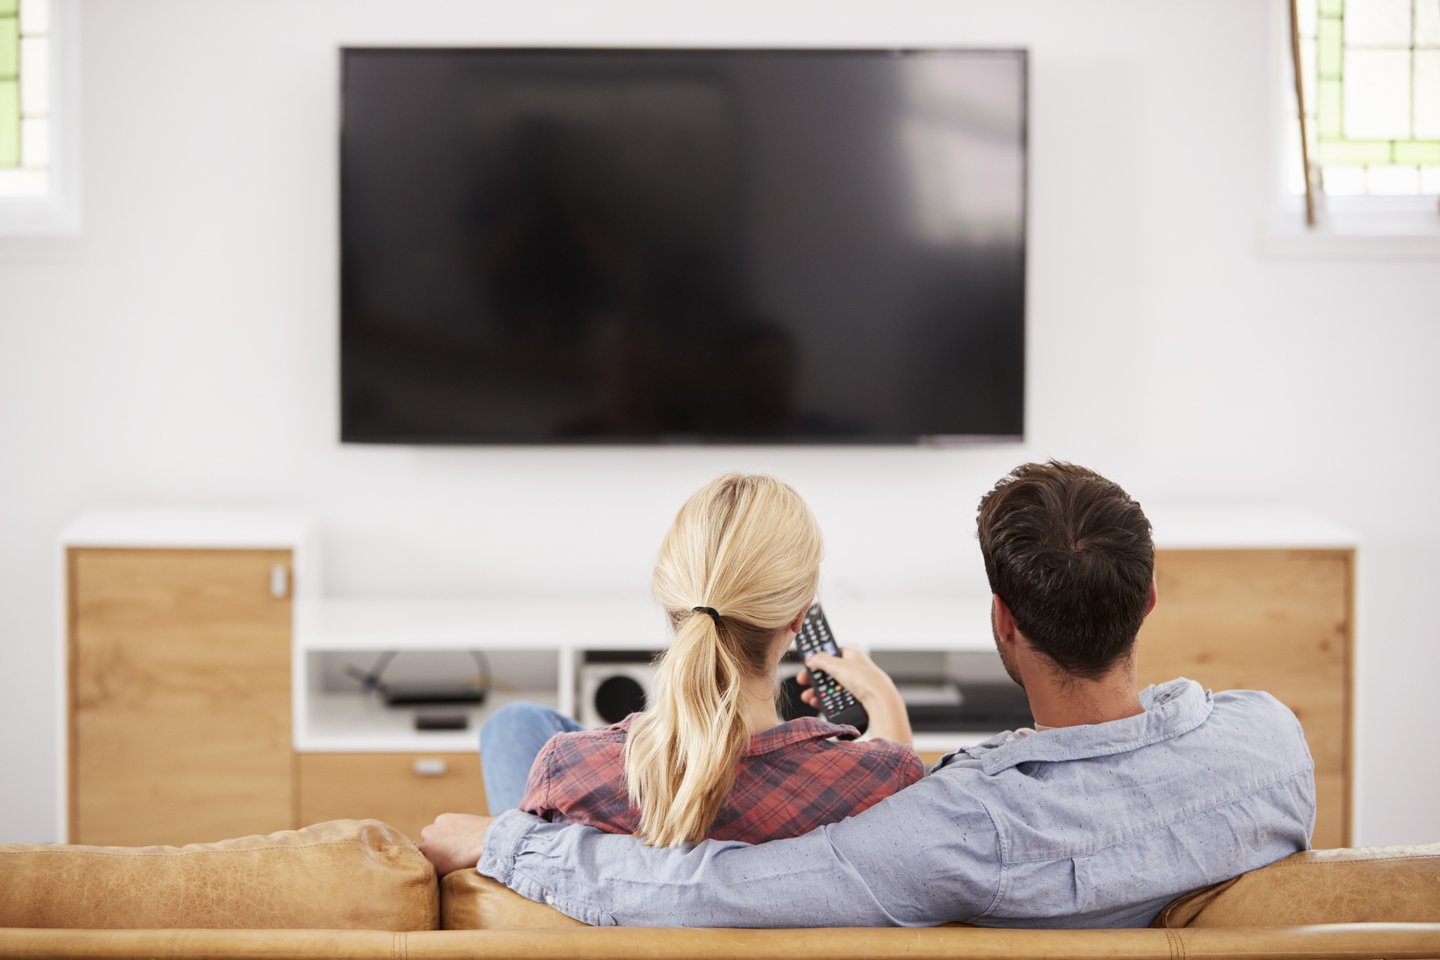 Kokios įstrižainės televizorius geriausiai atitiks poreikius? Kokią  įtaką turi žiūrėjimo atstumas? Kokie yra skirtingų ekranų technologijų  privalumai ir trūkumai?<br>123RF nuotr.